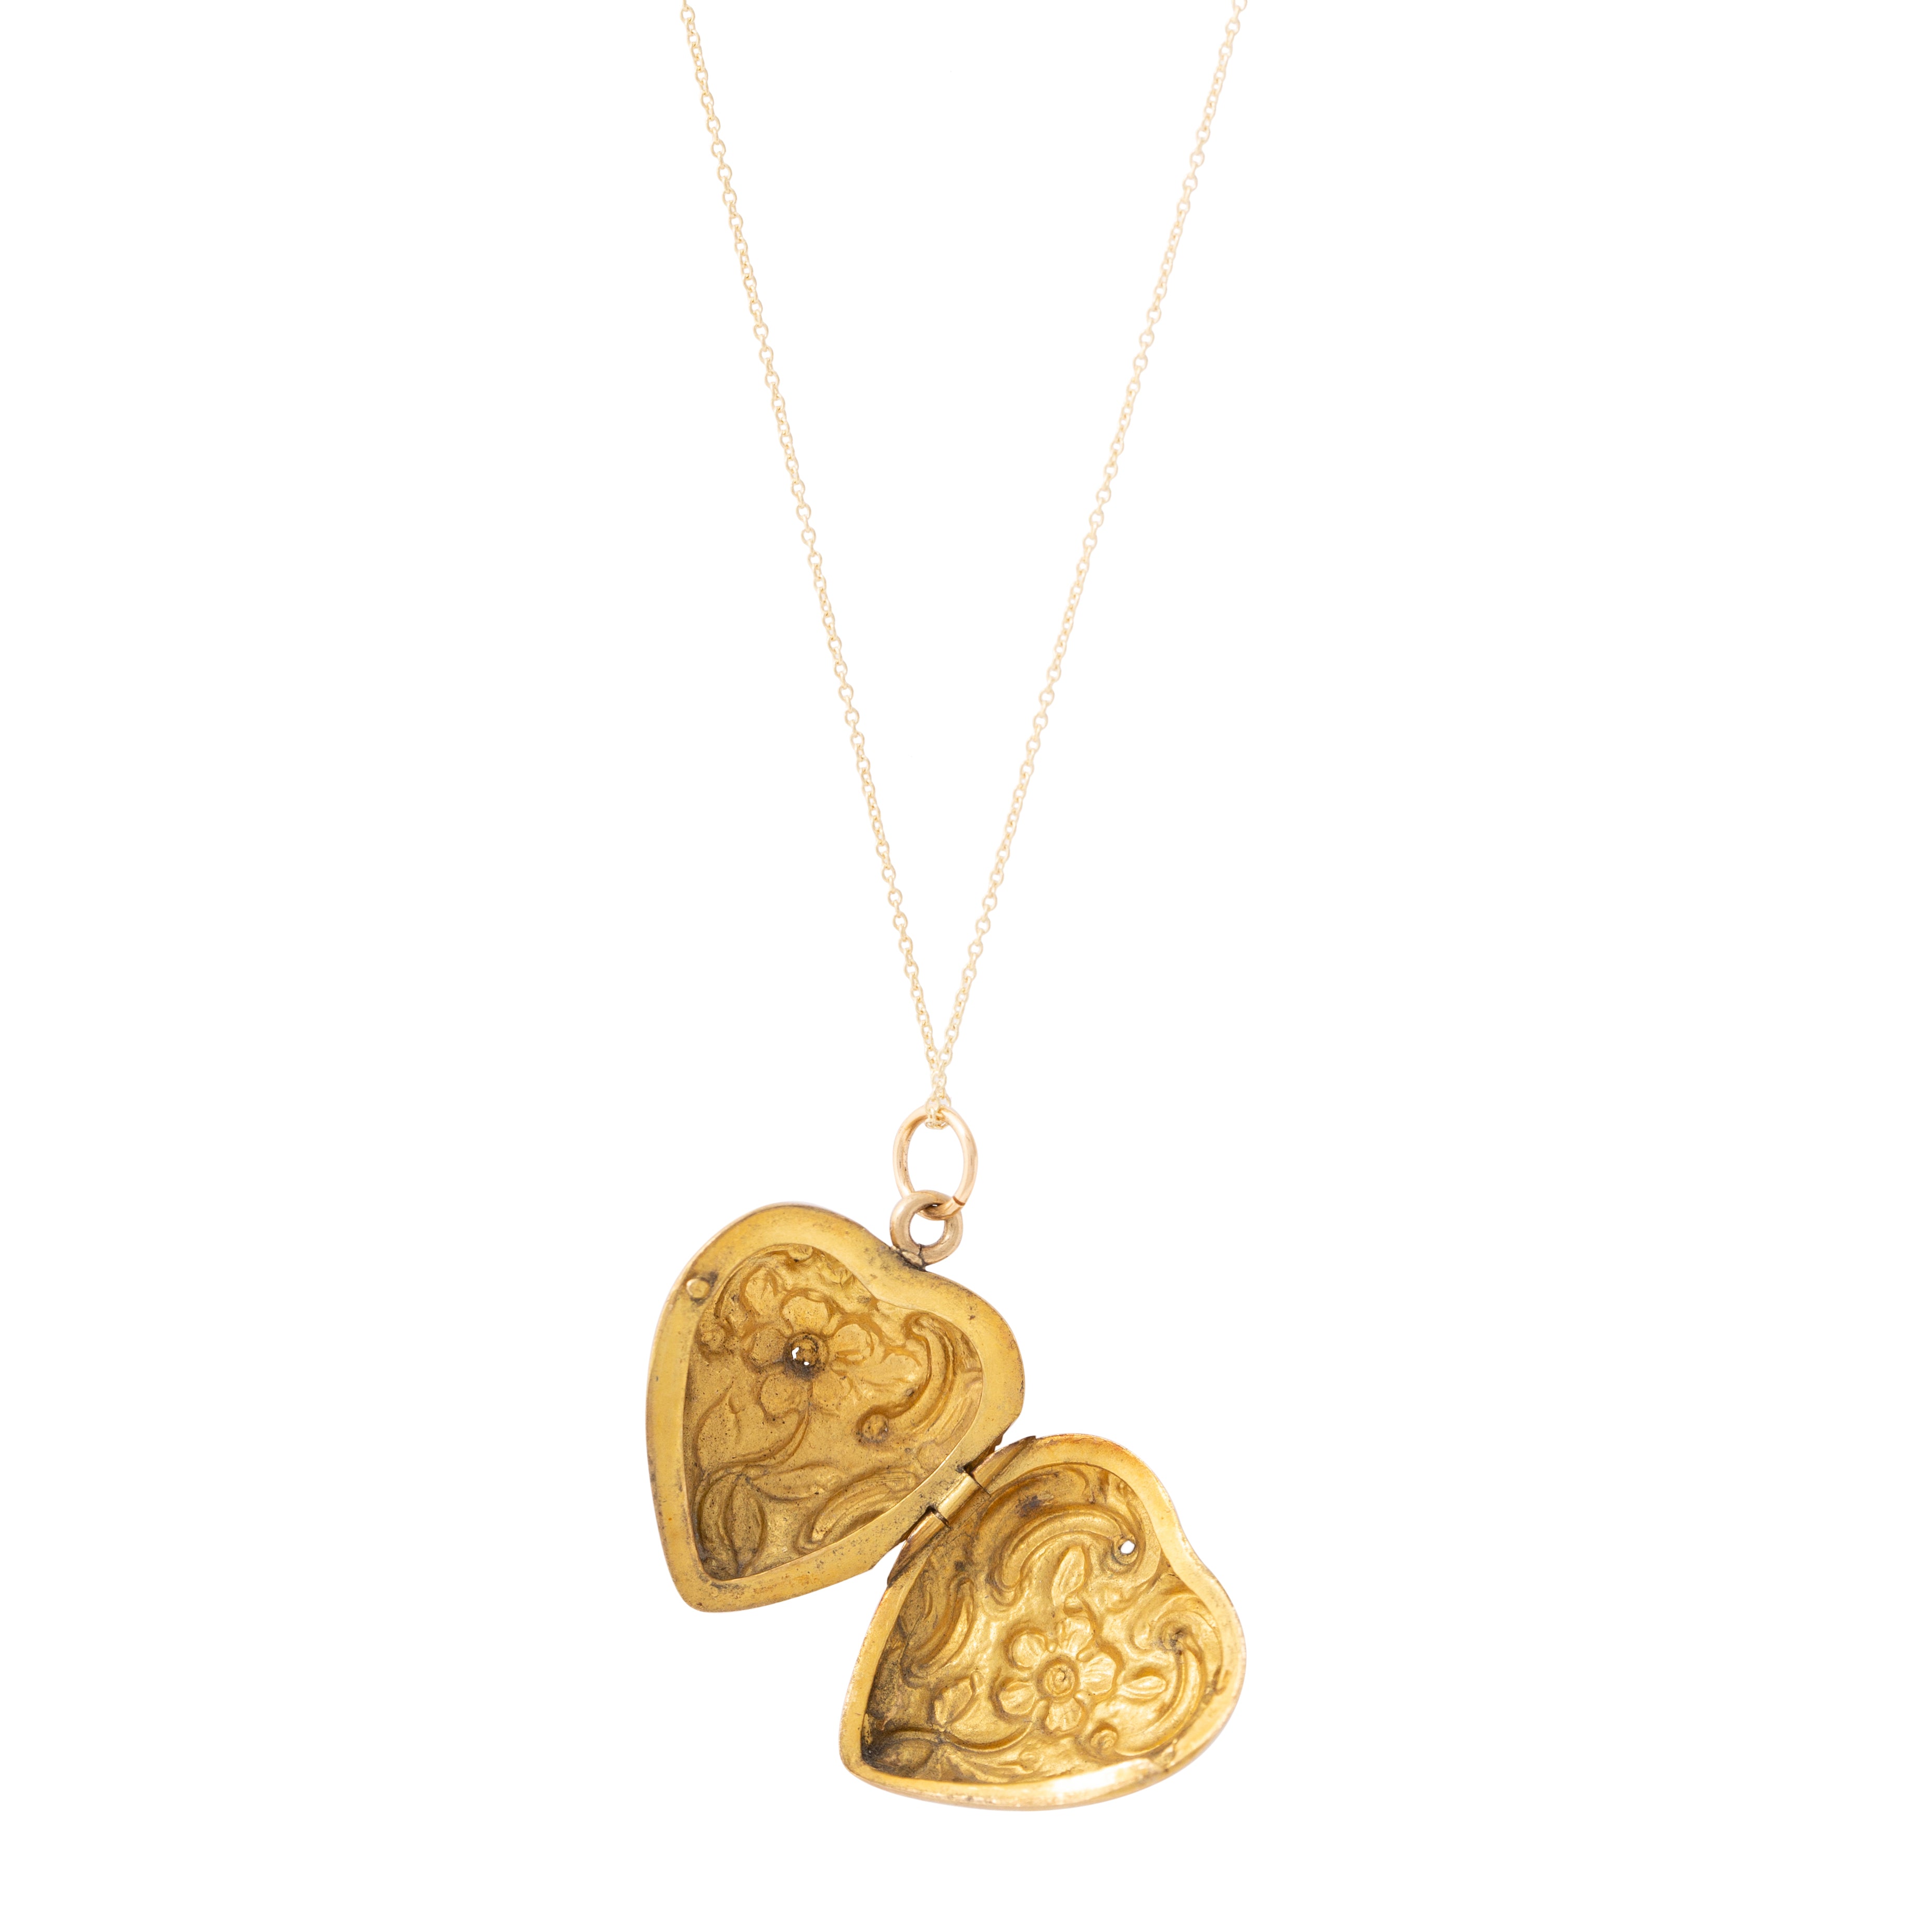 Art Nouveau Floral Repousse 18k Yellow Gold Heart Locket